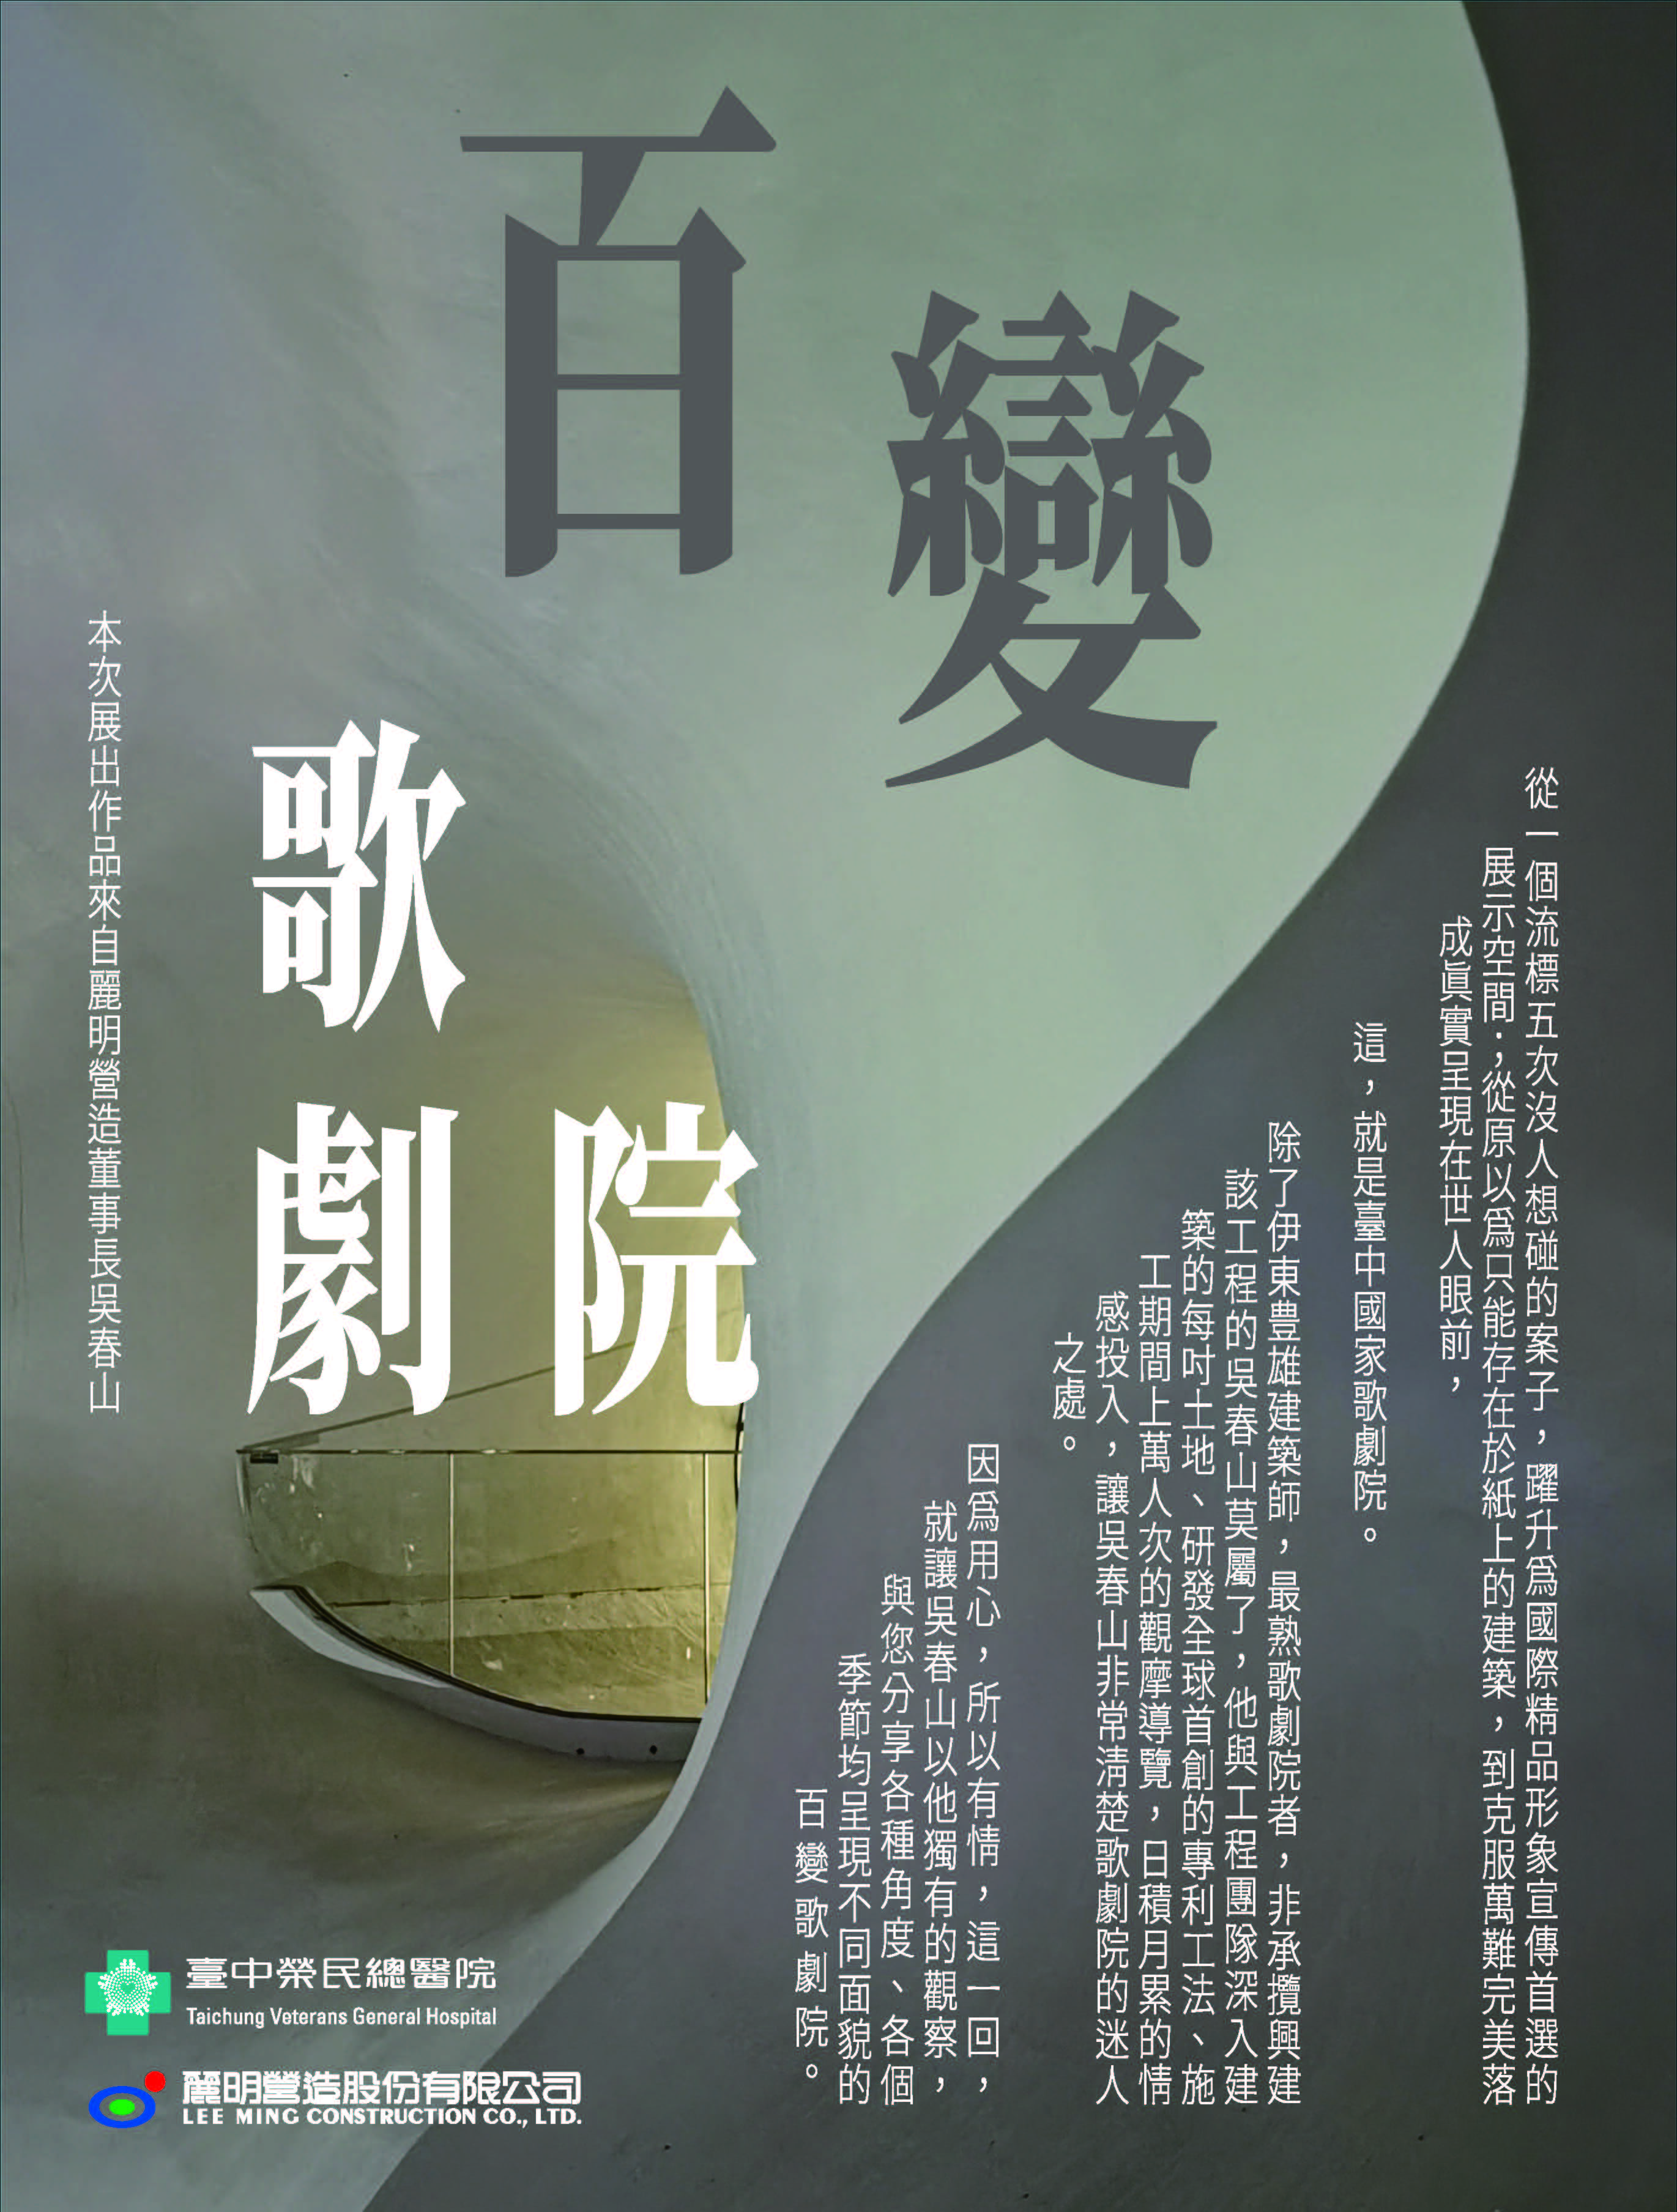 百變歌劇院-吳春山攝影展宣傳海報